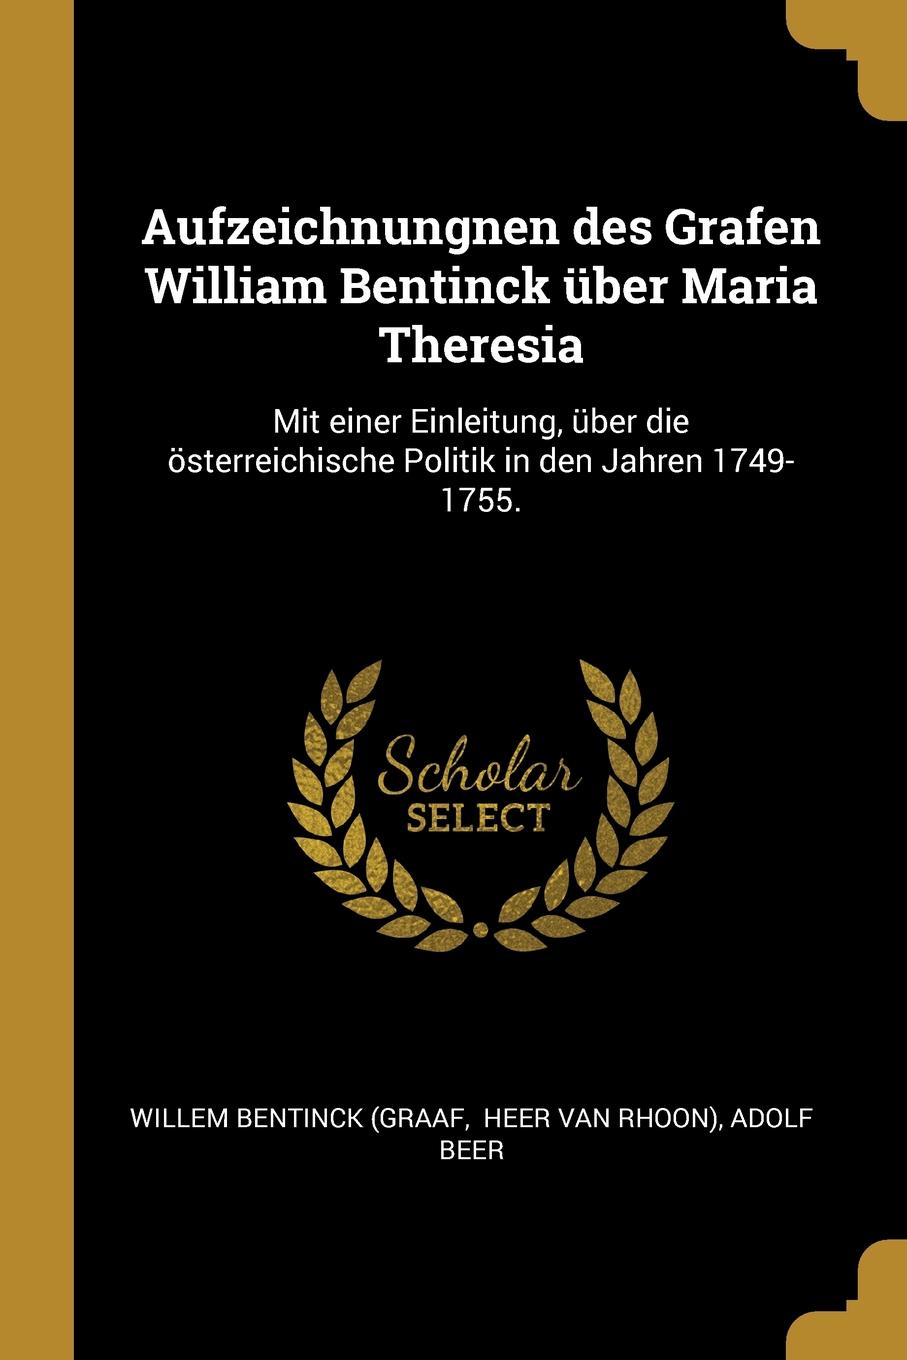 Aufzeichnungnen des Grafen William Bentinck uber Maria Theresia. Mit einer Einleitung, uber die osterreichische Politik in den Jahren 1749-1755.